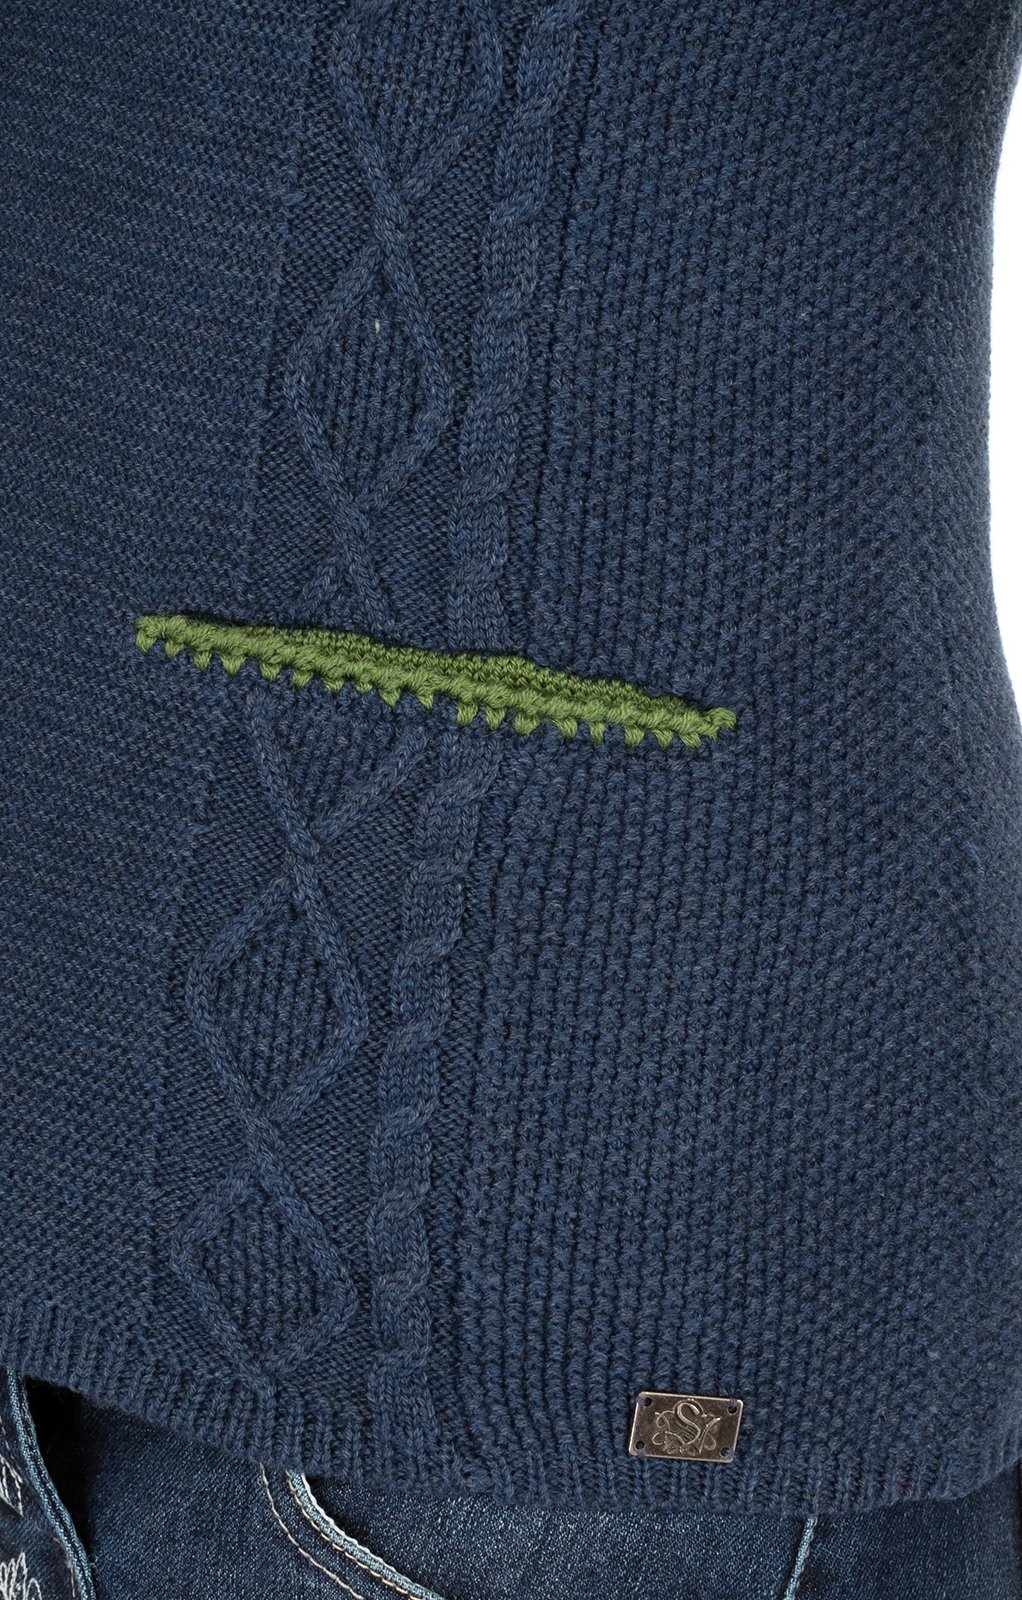 weitere Bilder von Trachtenstrickjacke GIANNA Reversform jeansblau